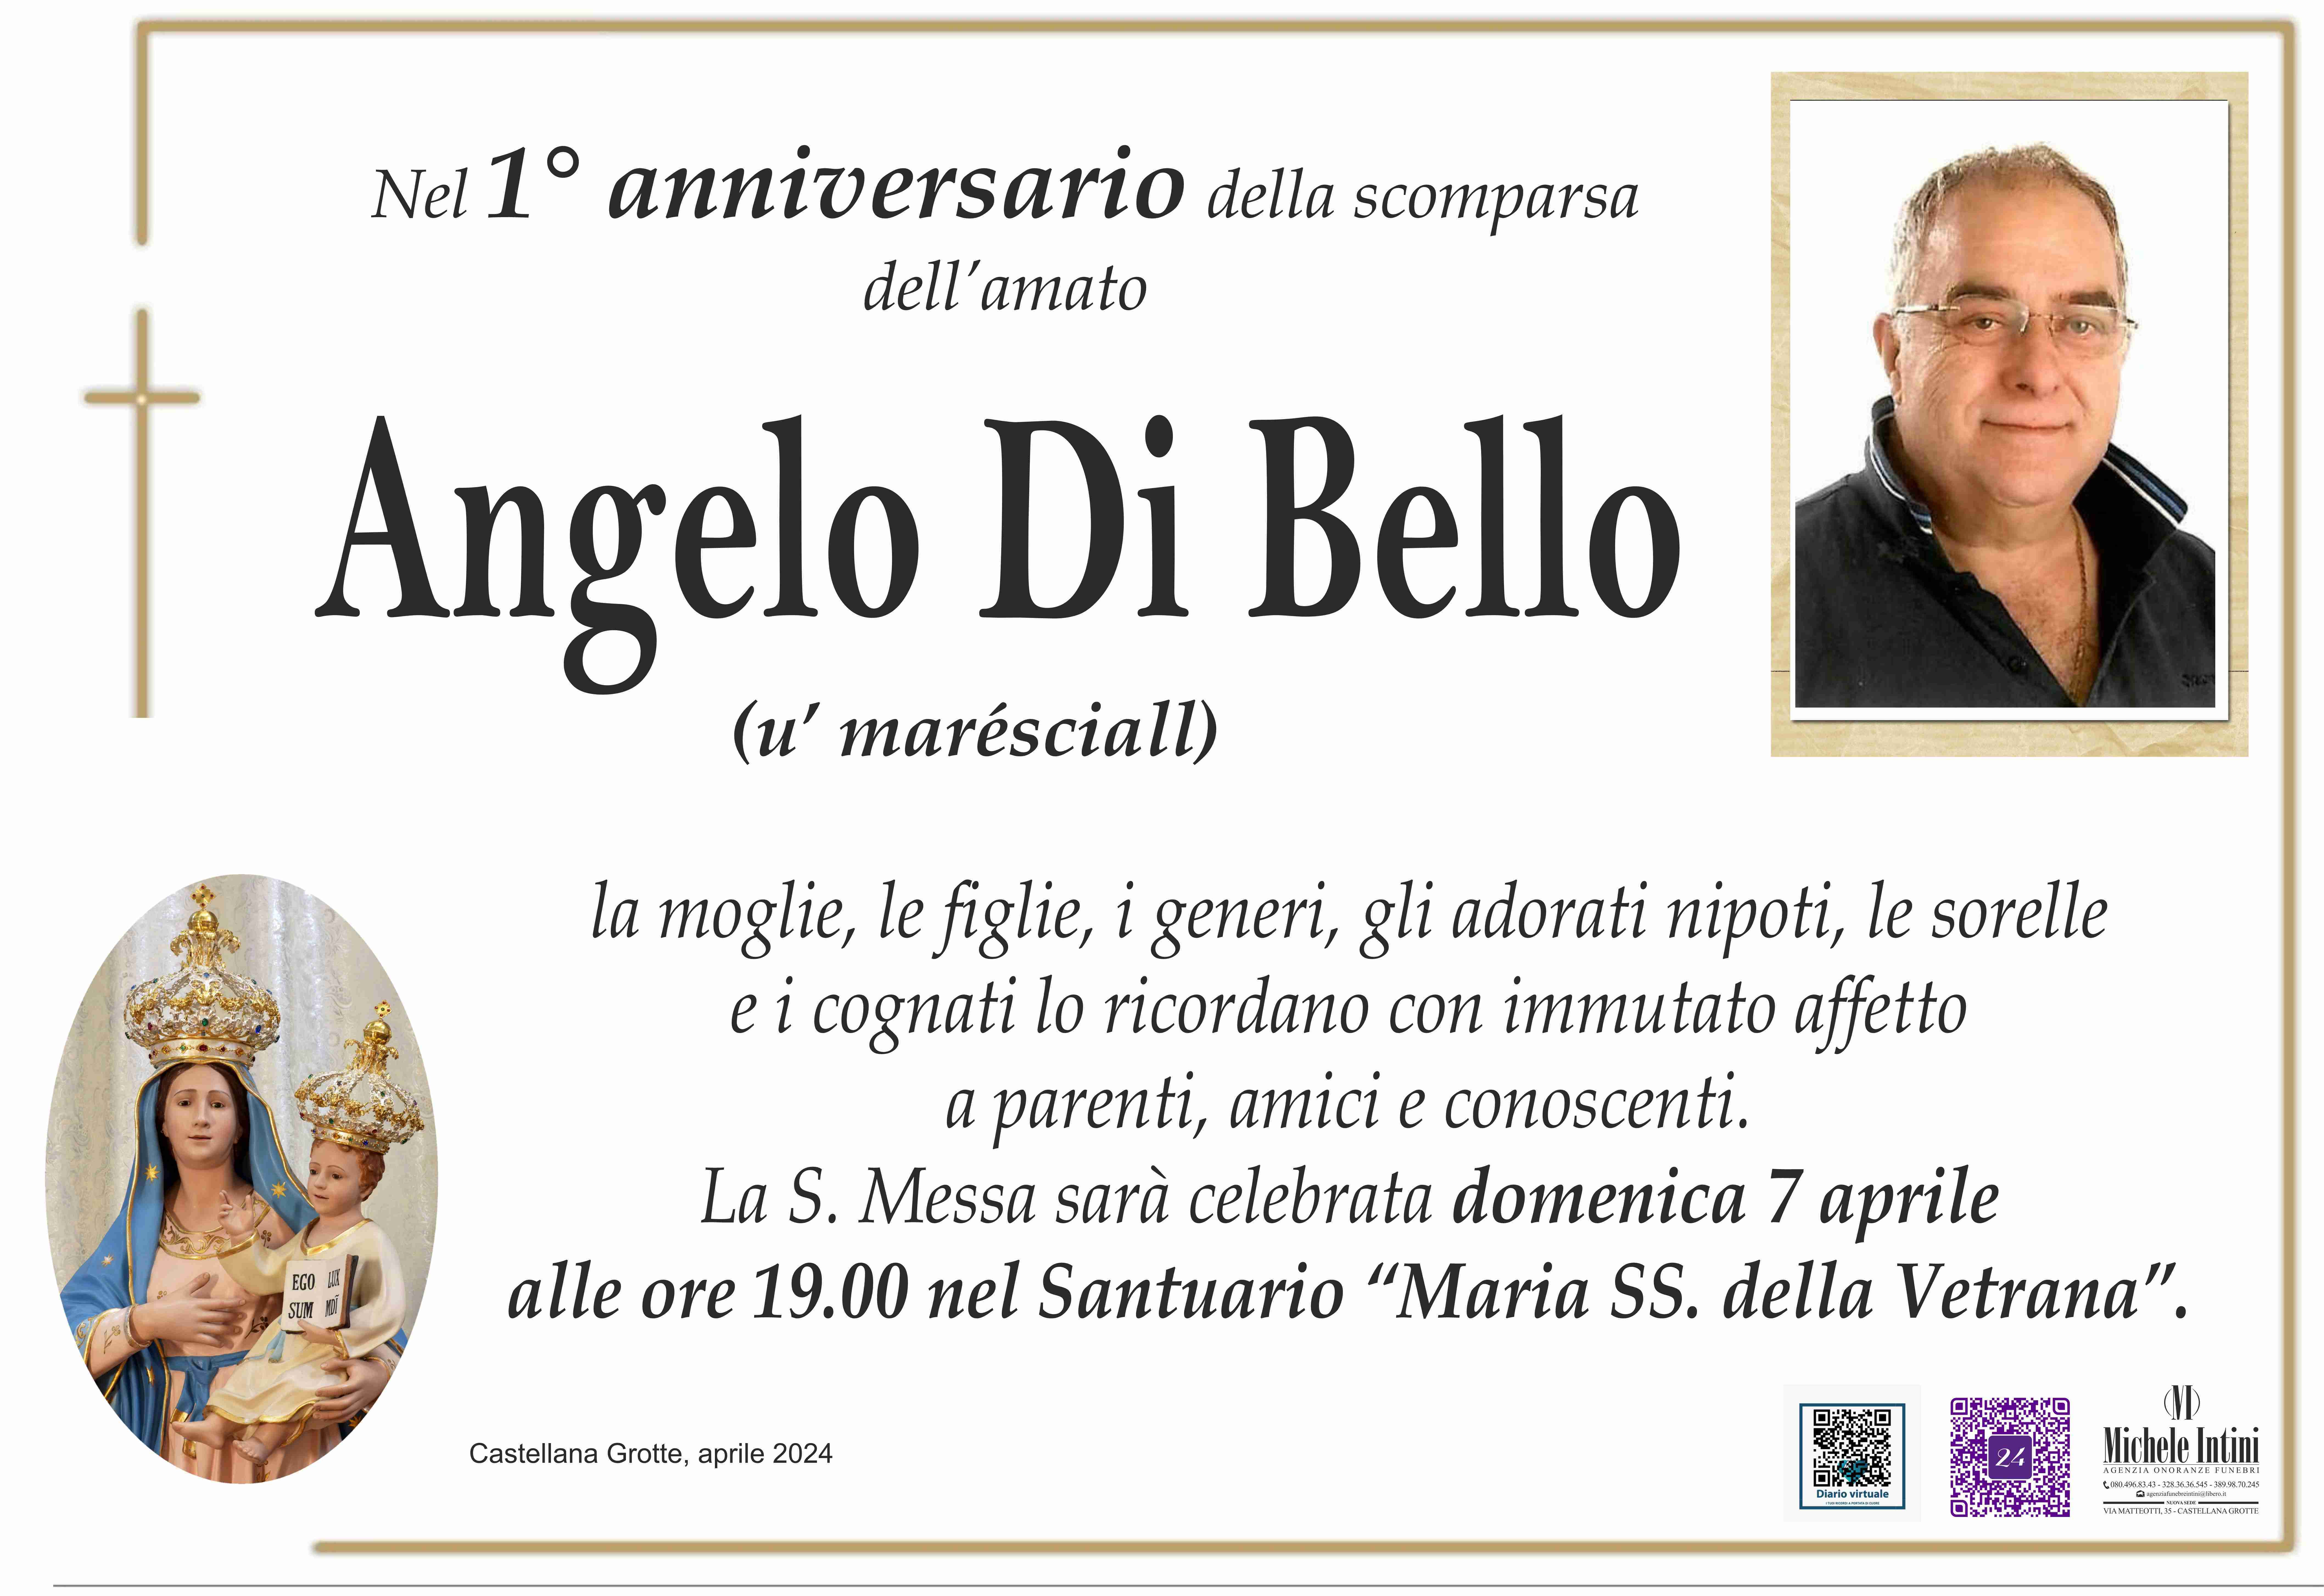 Angelo Di Bello